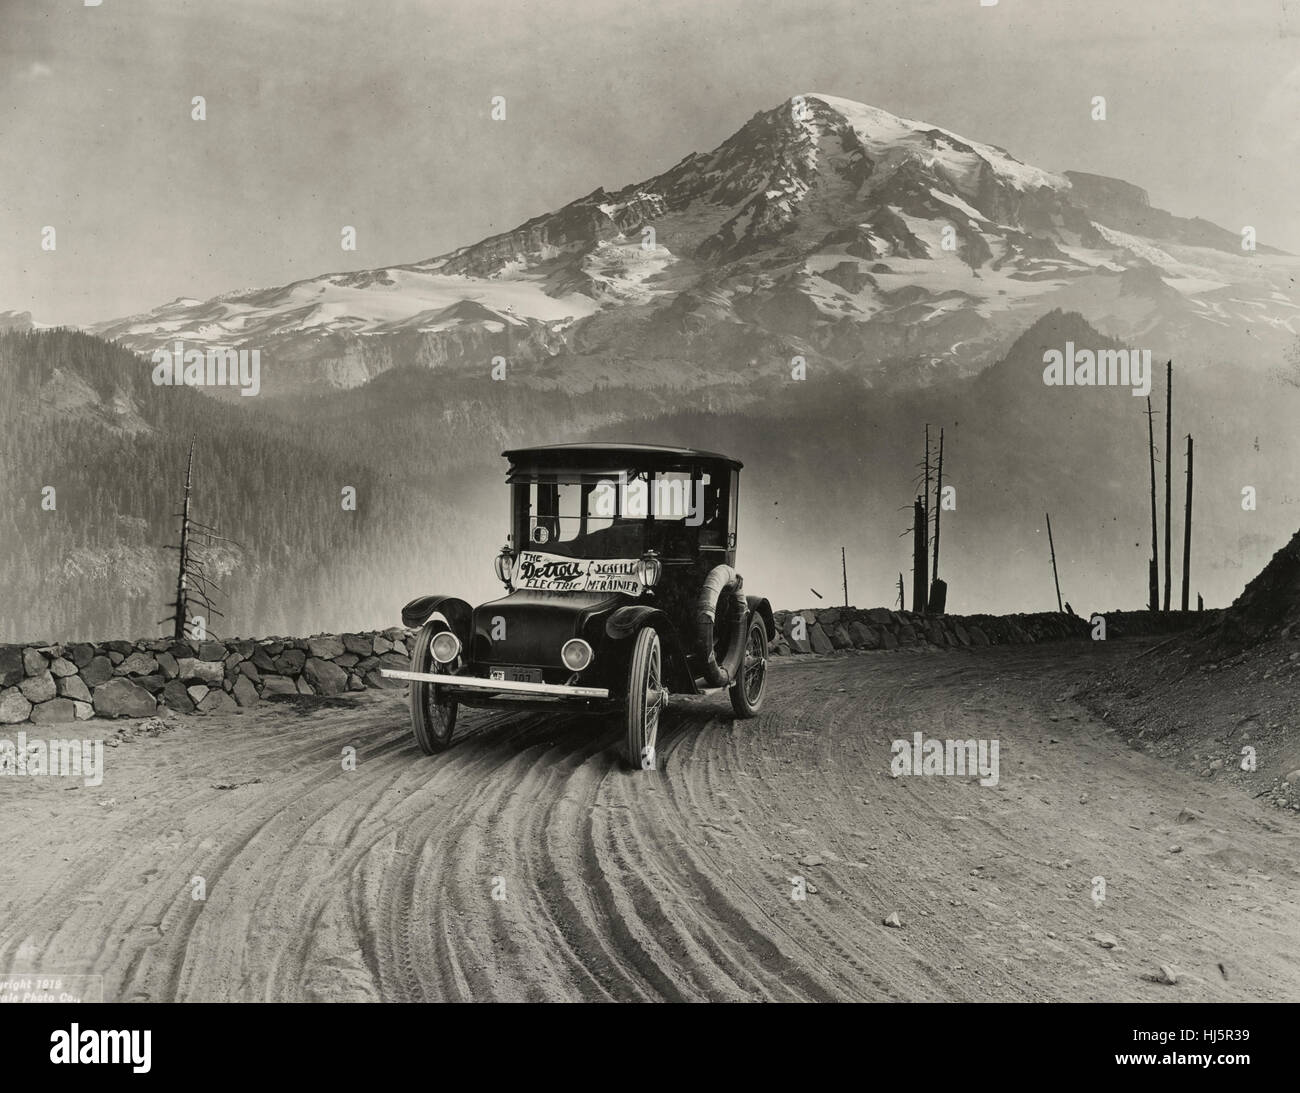 Detroit Auto elettrica sul tour promozionale attraverso le montagne da Seattle a Mt. Rainier. Fotografia mostra una vettura elettrica prodotta per Anderson auto elettrica Co. con Mt. Rainier nella distanza. 1919 Foto Stock